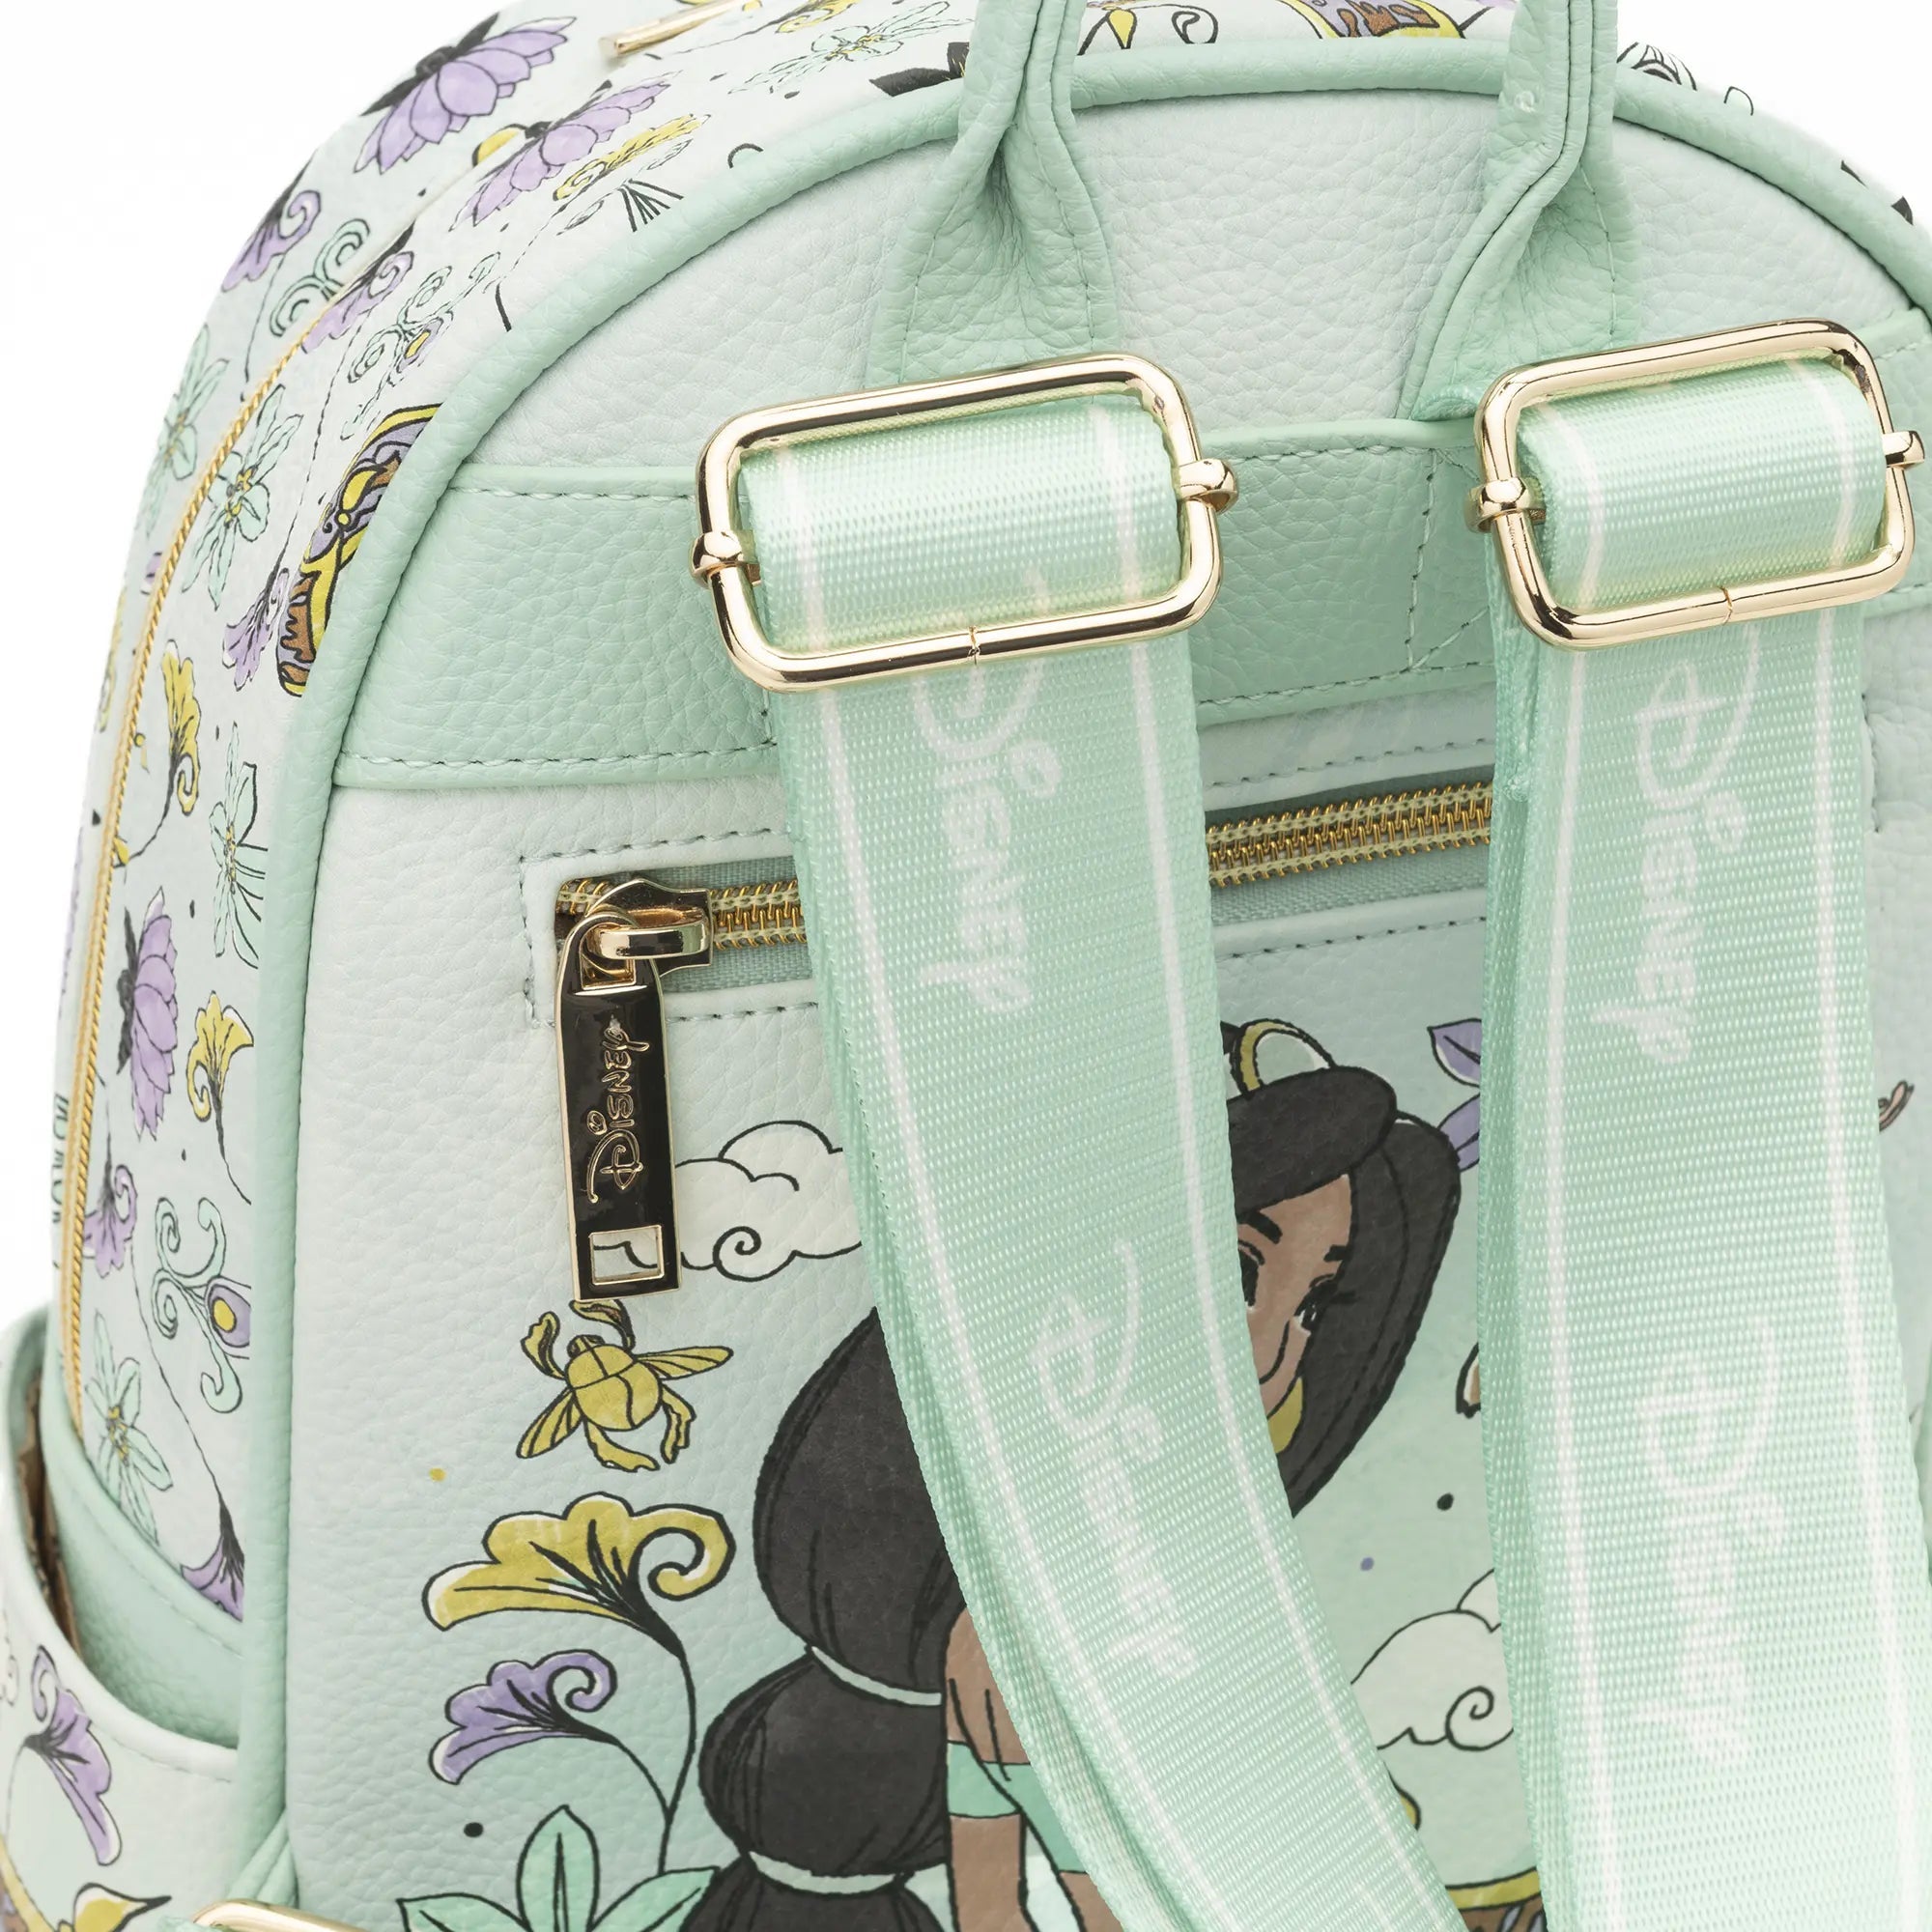 Jasmine WondaPop 11" Vegan Leather Fashion Mini Backpack